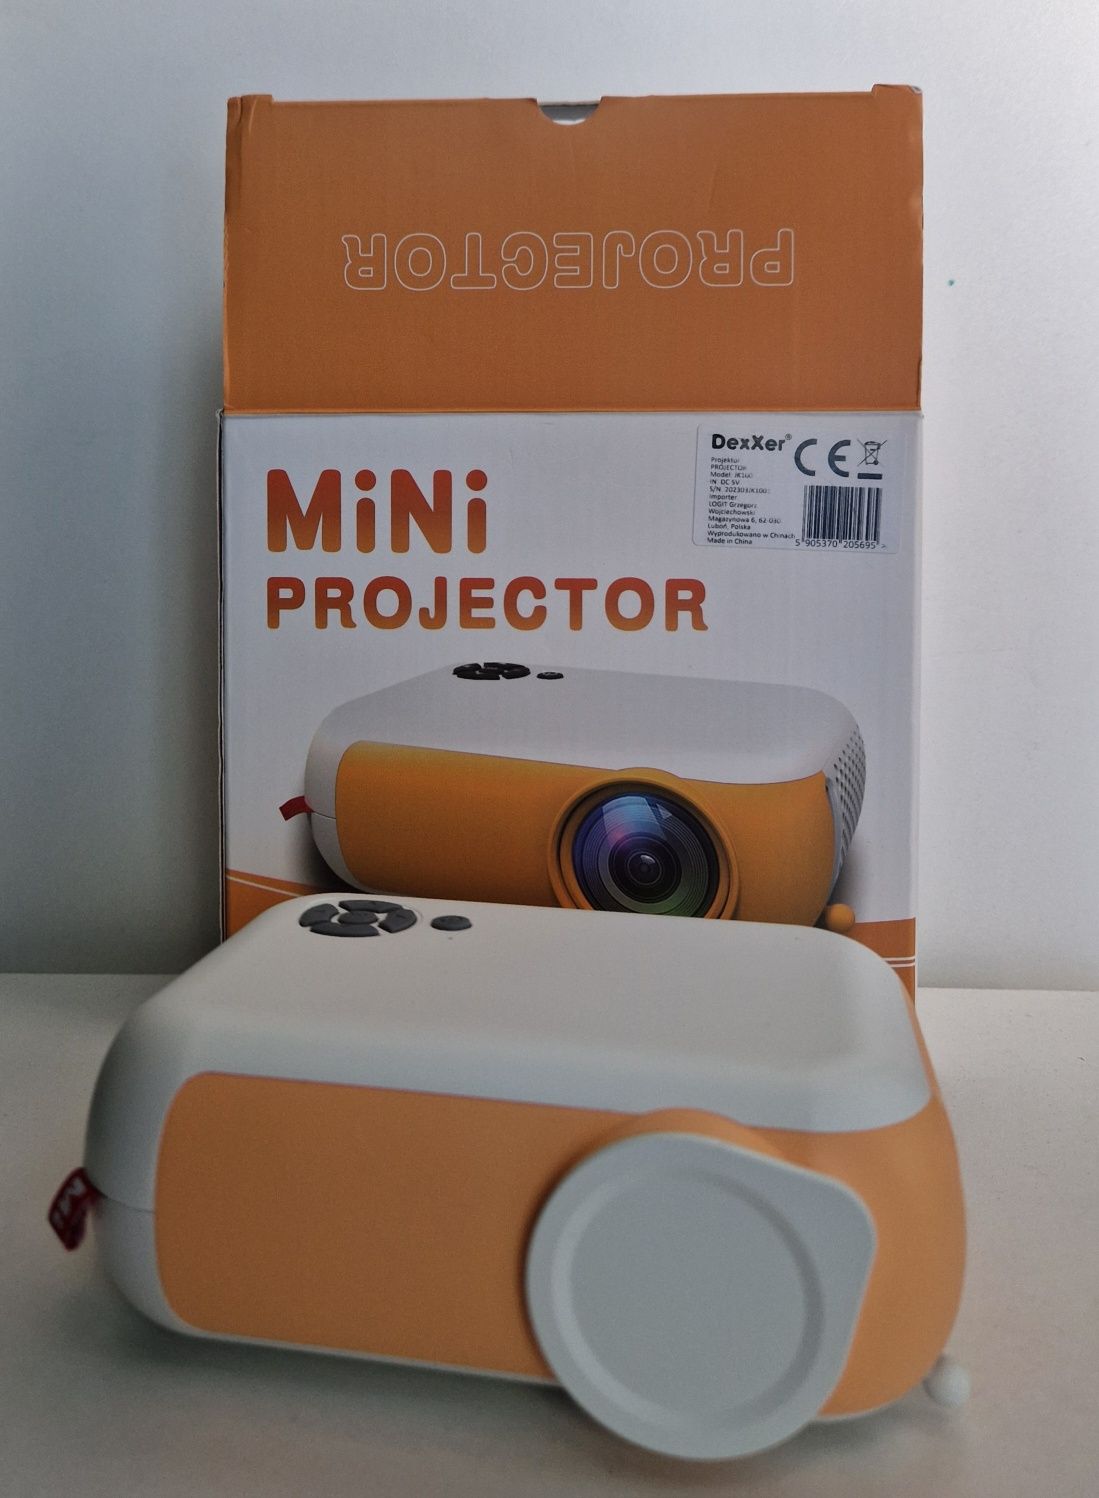 Projektor mini Rzutnik LED Zenwire A10 Full HD Przenośny
Projektor min